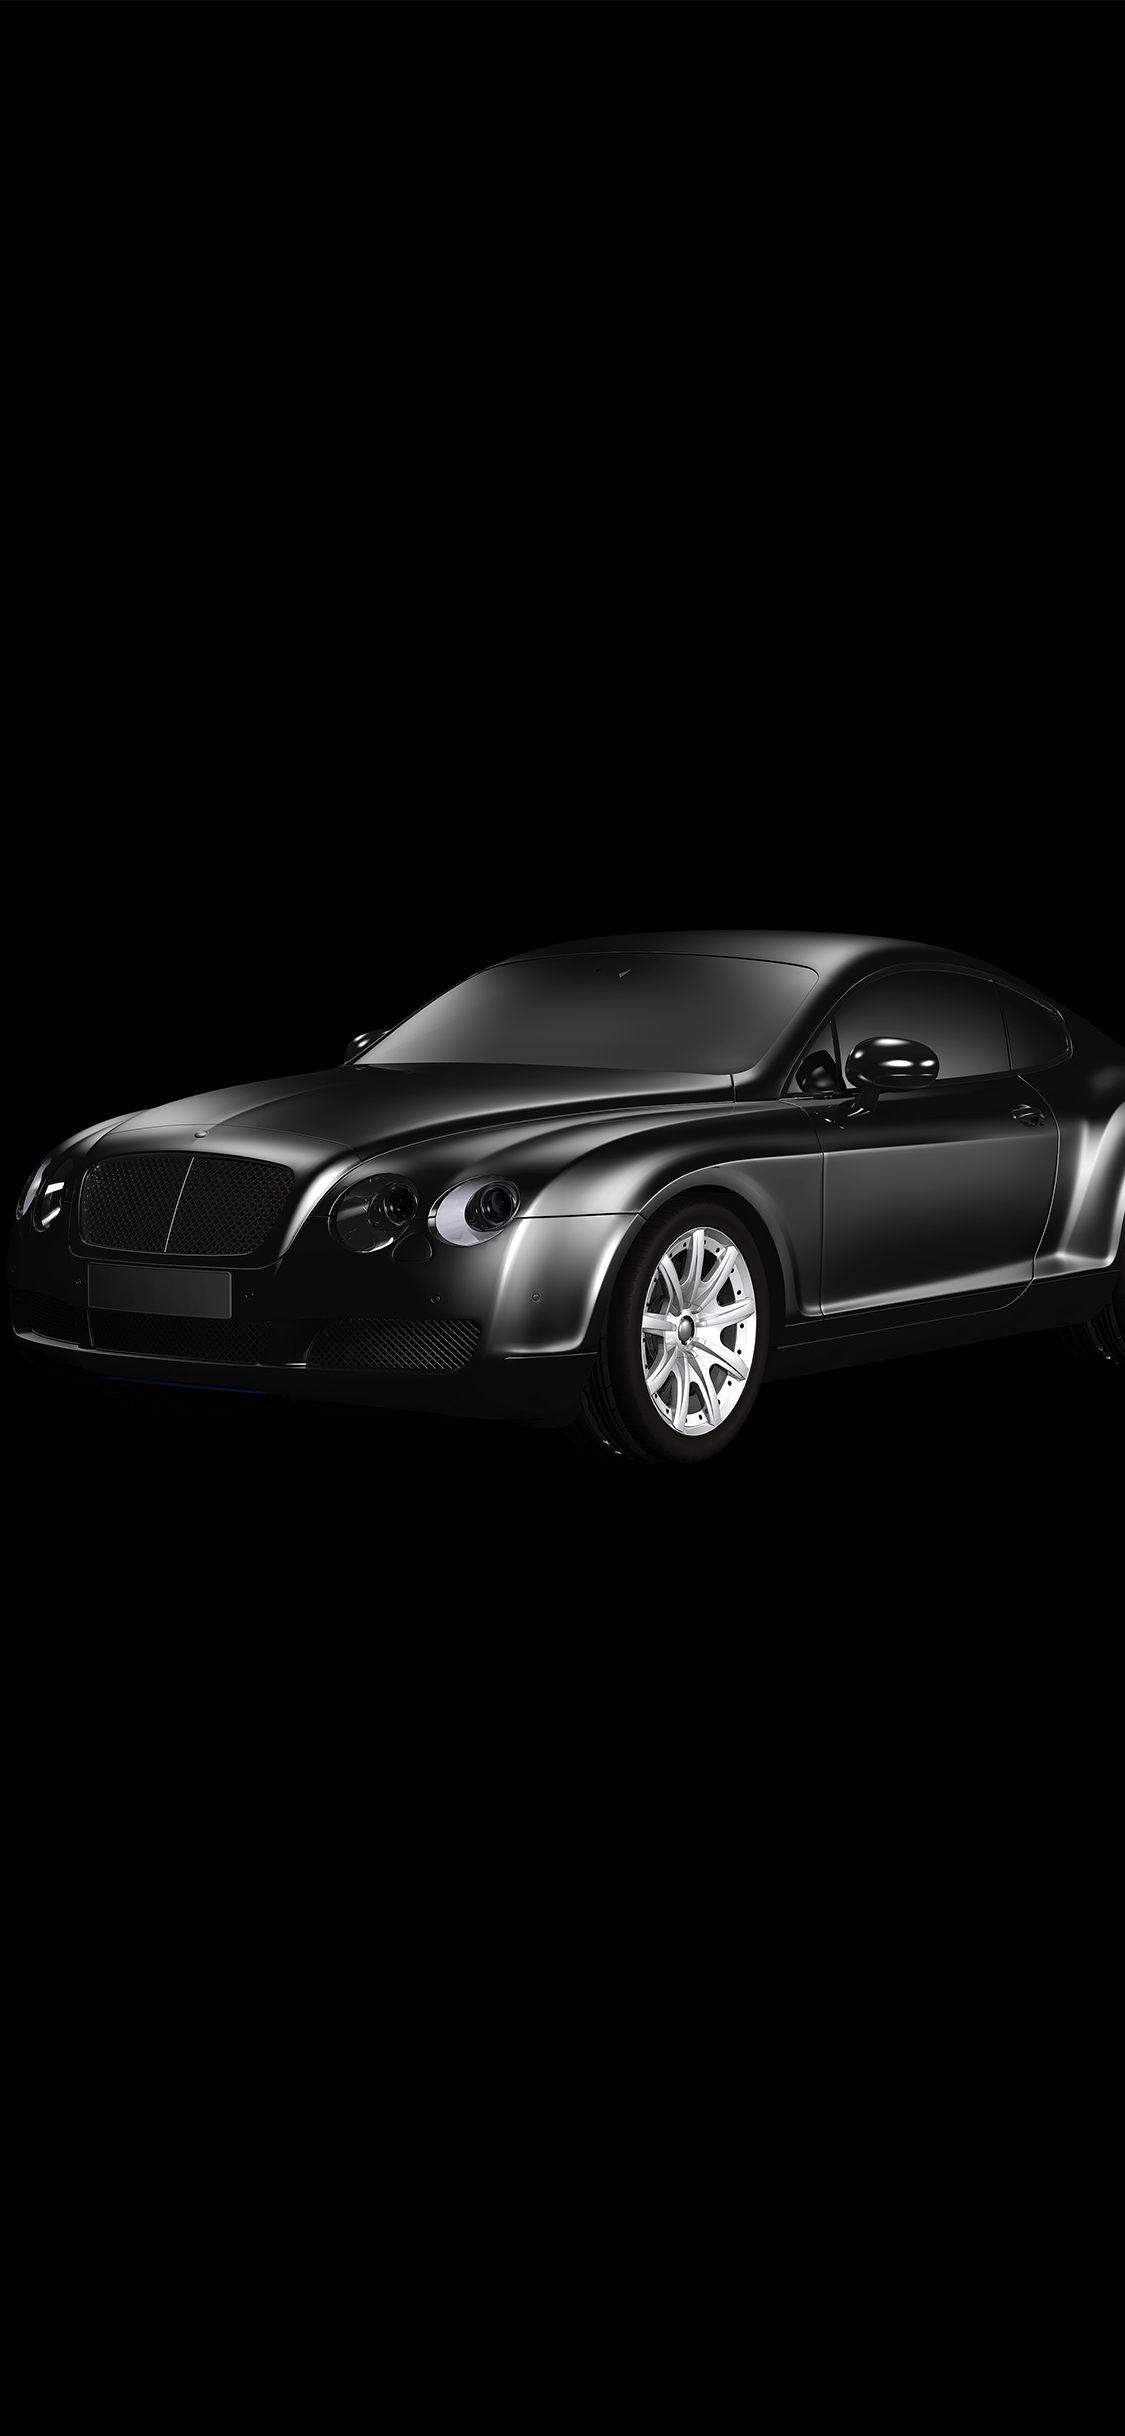 Hình nền nghệ thuật vẽ minh họa cho xe ô tô Bentley màu đen tối Limousine 1125x2436